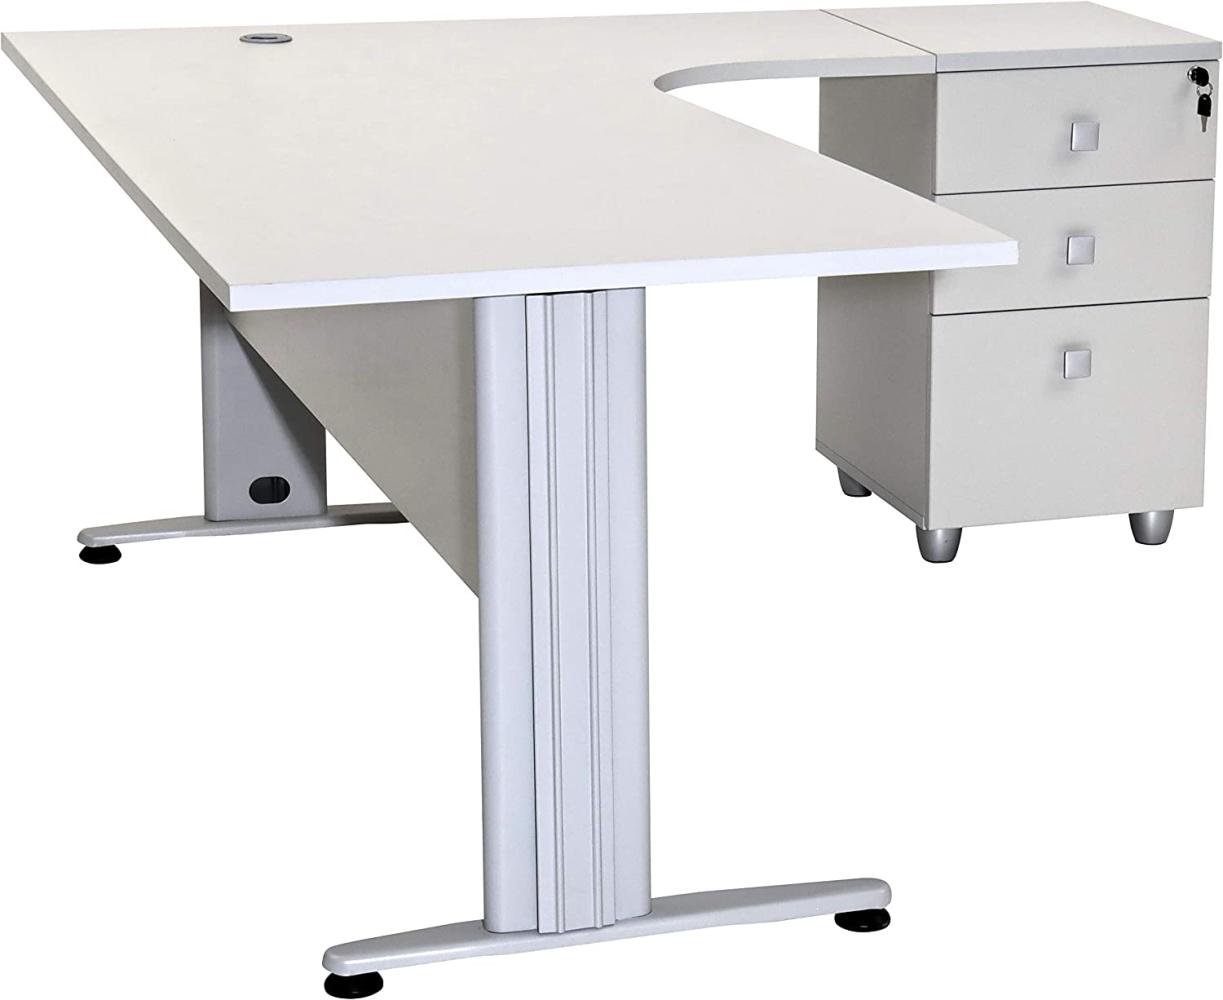 Furni24 Schreibtisch Winkelschreibtisch, Eckschreibtisch, Moderner Bürotisch Computertisch mit großer Arbeitsfläche, Bürotisch, PC Tisch, Dona Grau 180x120x74cm inkl. Beistellcontainer rechts gewinkelt Bild 1